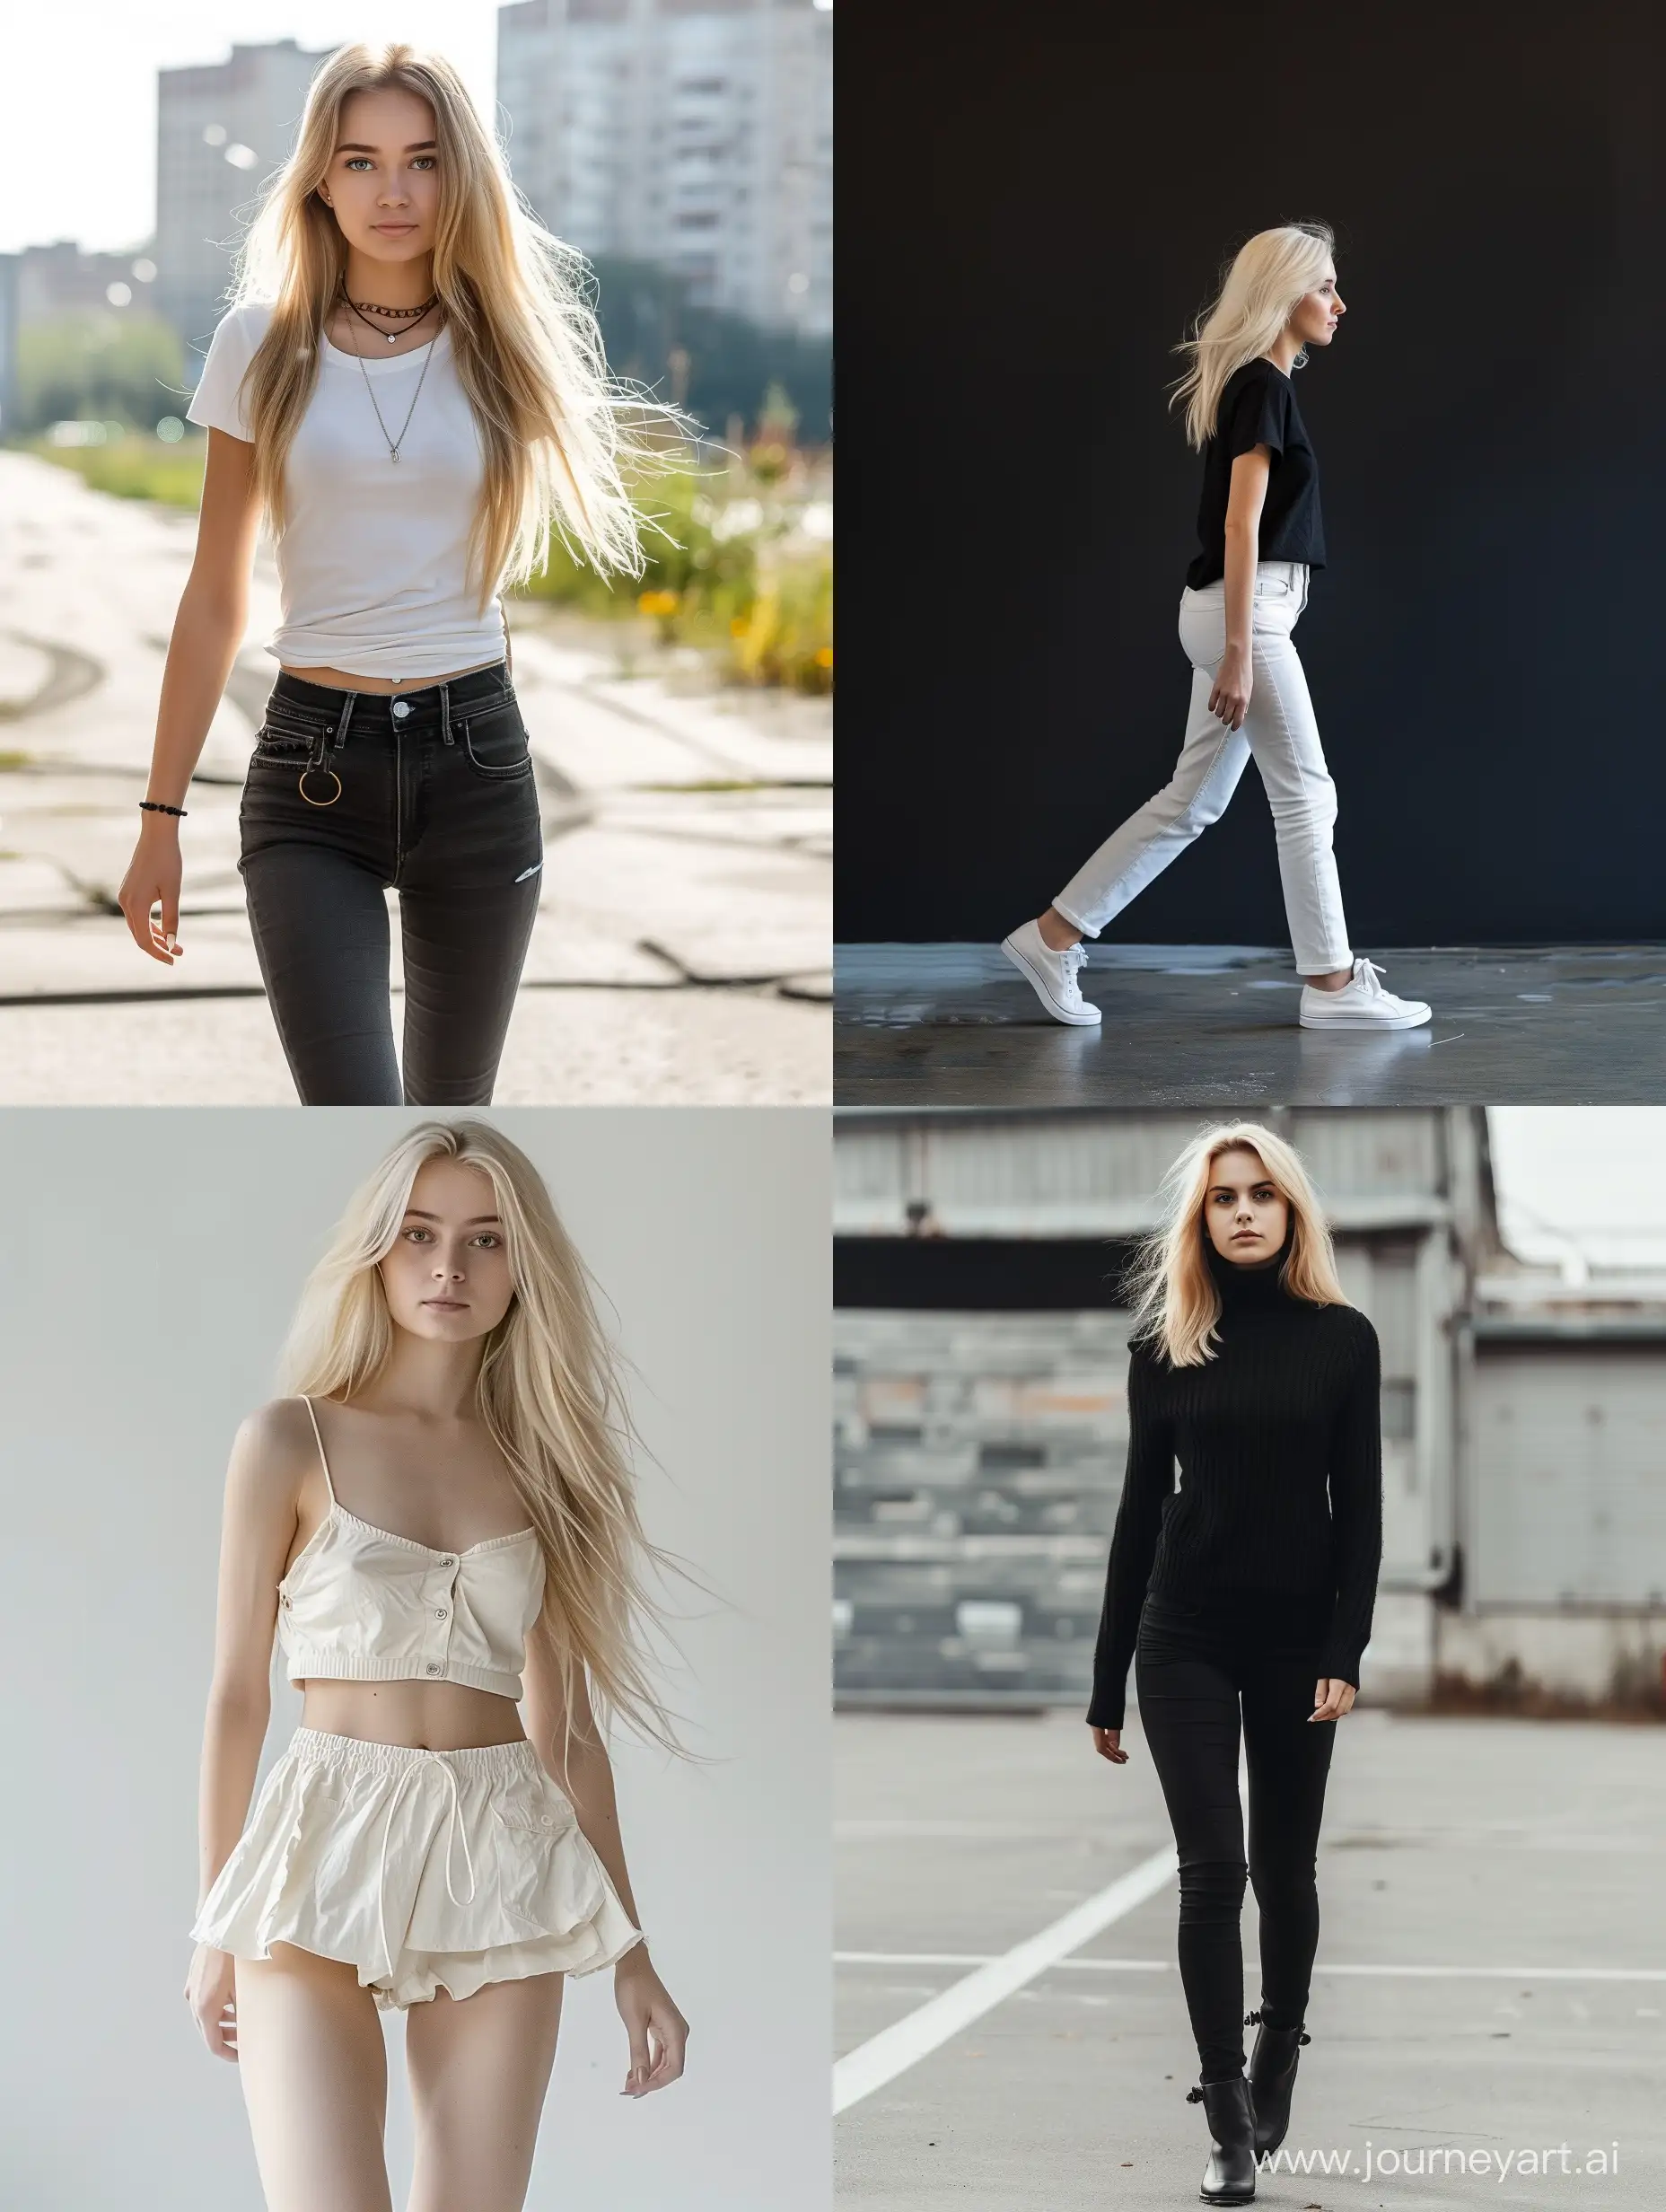 Skinny blonde girl, Slavic, walking, full body